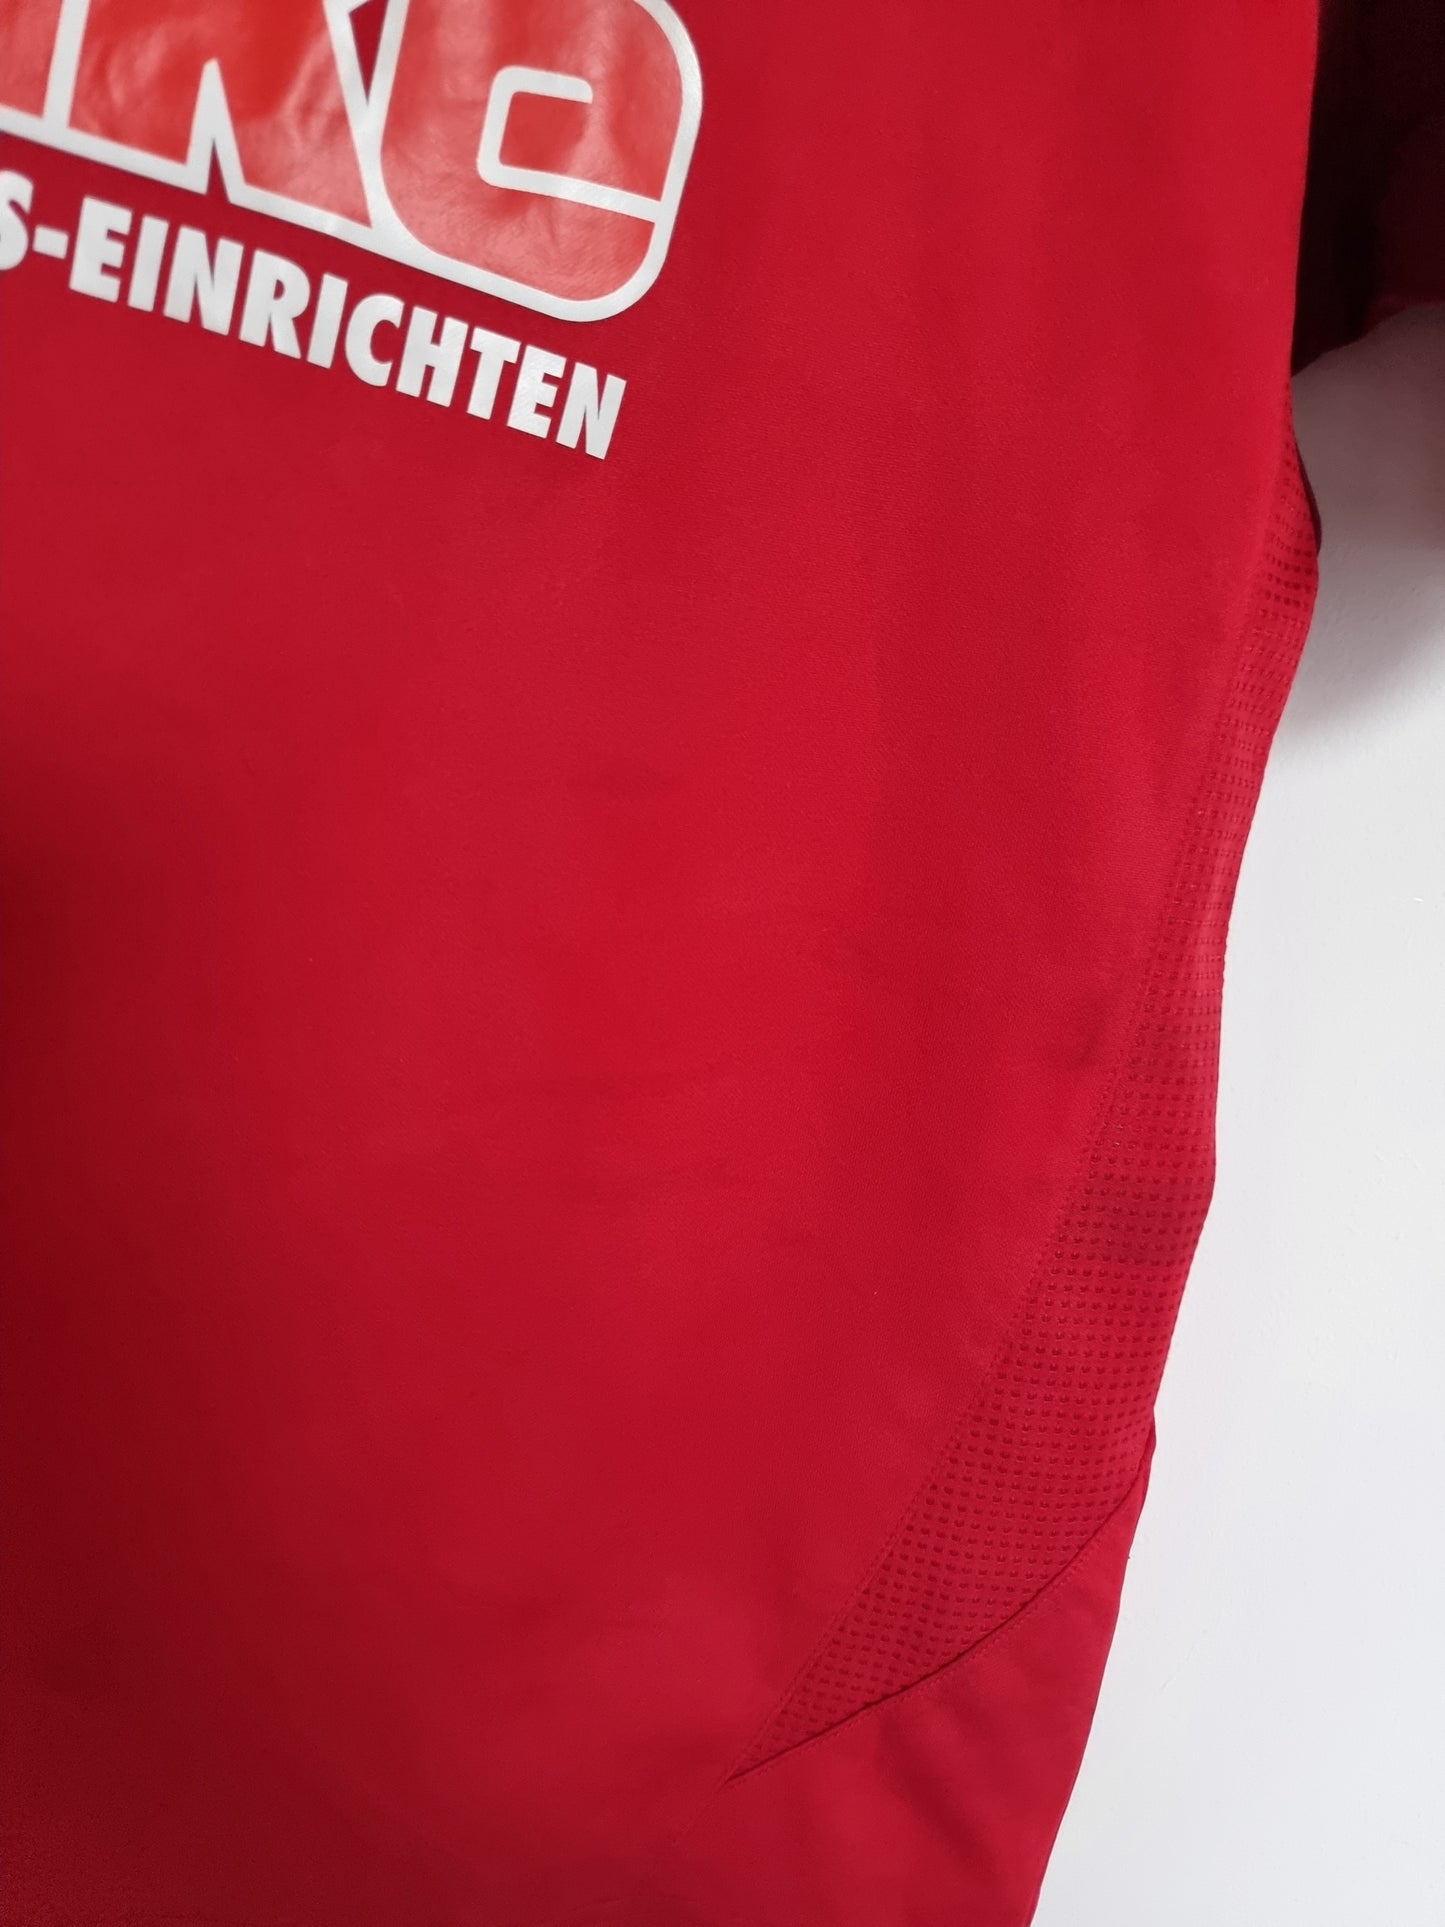 Saller SC Paderborn 12/13 '17 (Meha)' Away Shirt Medium